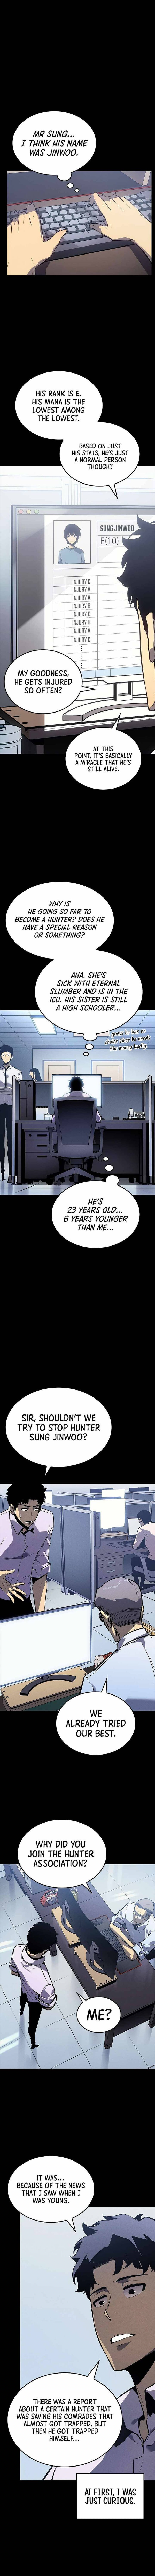 Solo Leveling Manga Manga Chapter - 200 - image 3